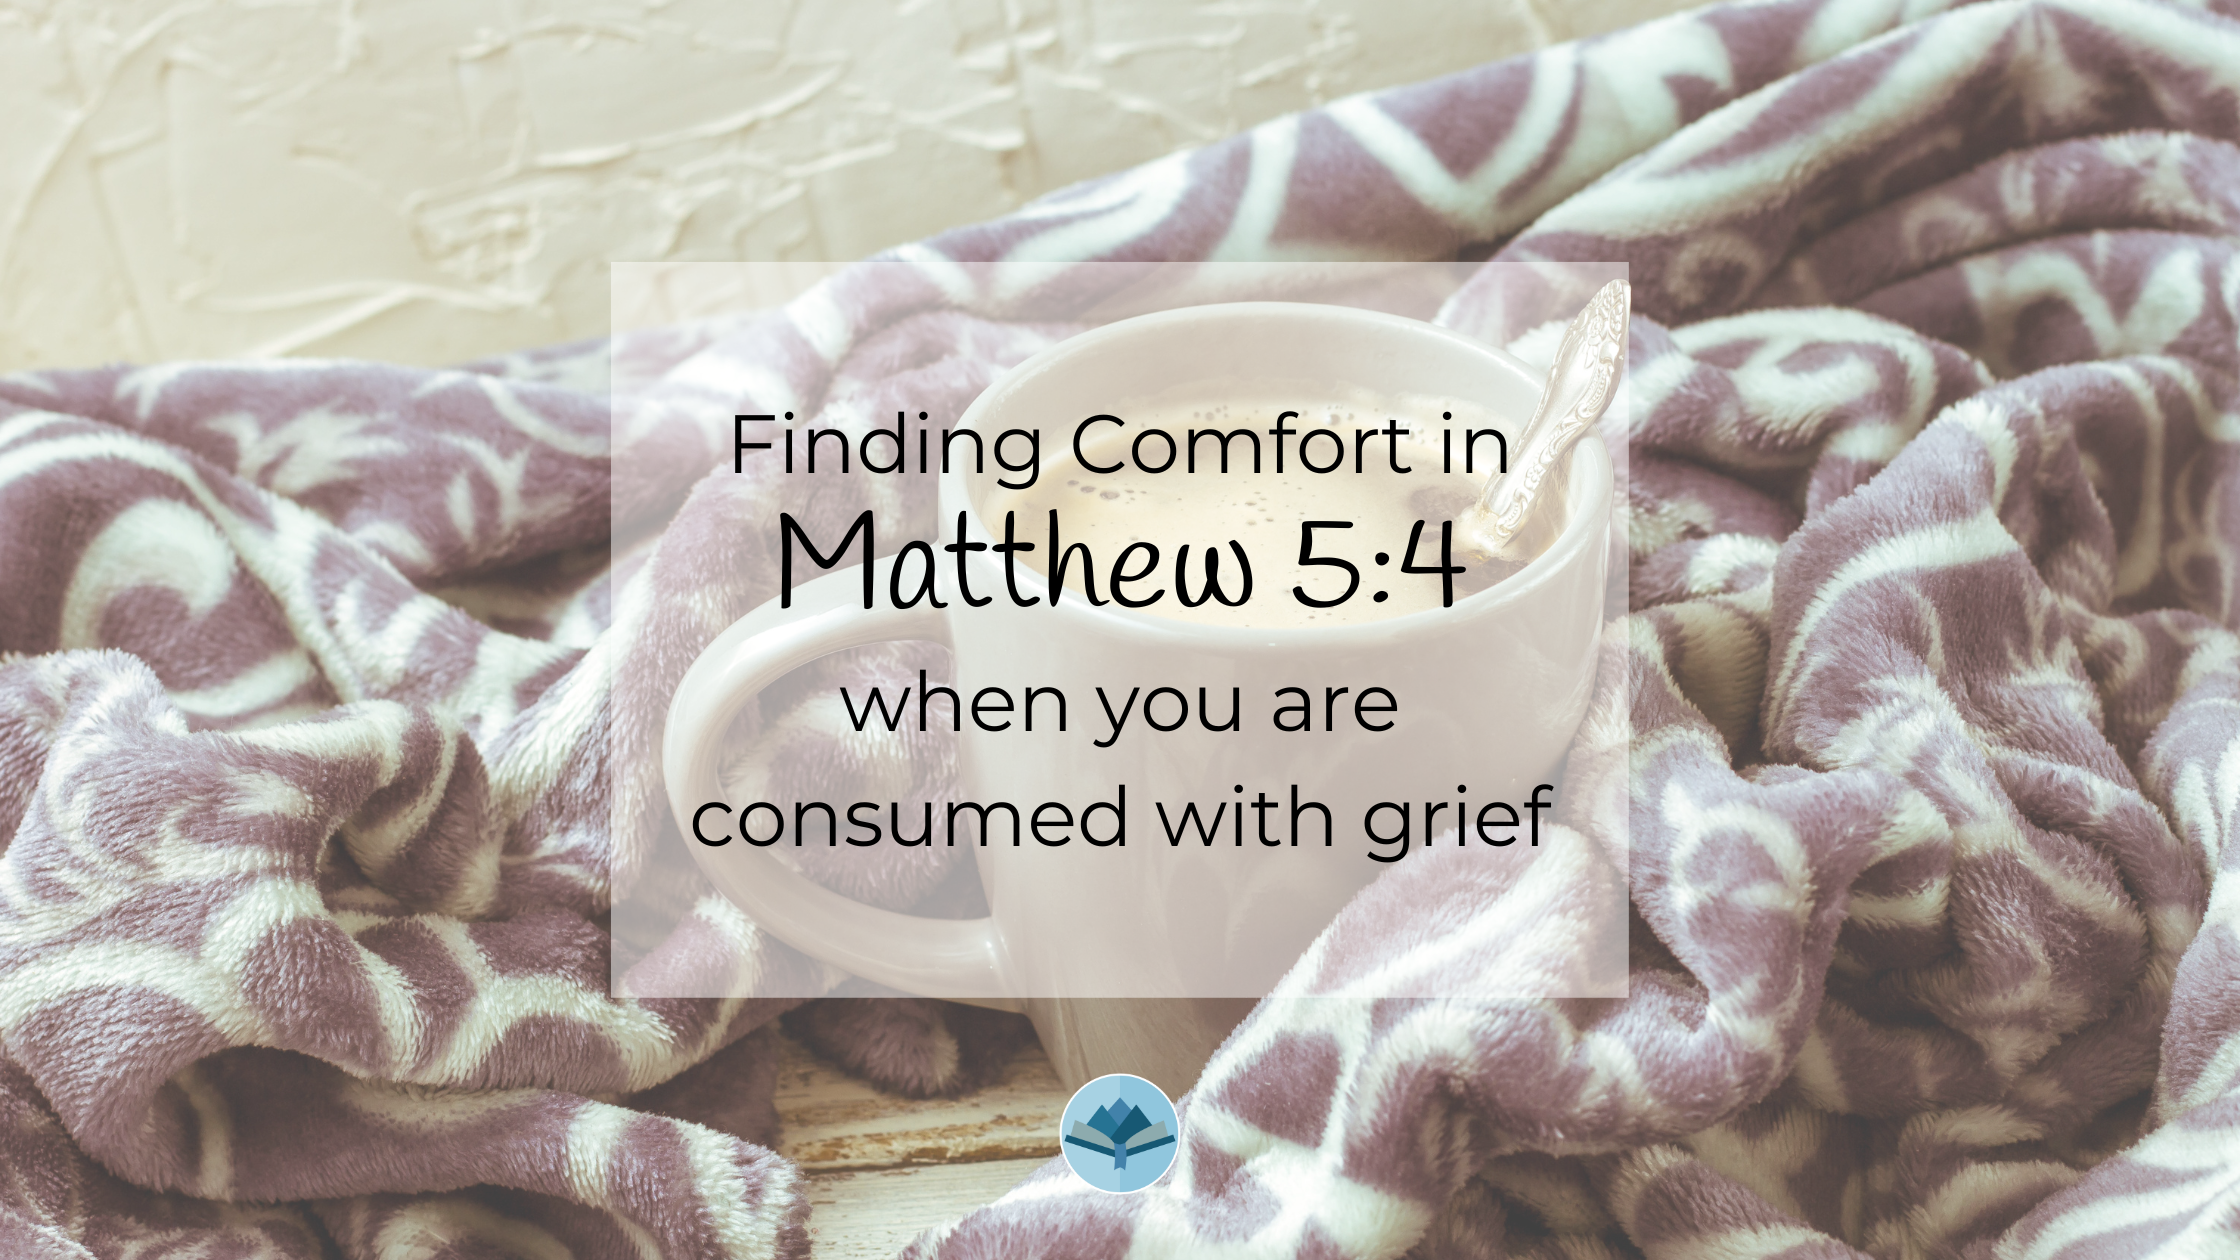 Finding Comfort in Matthew 5:4